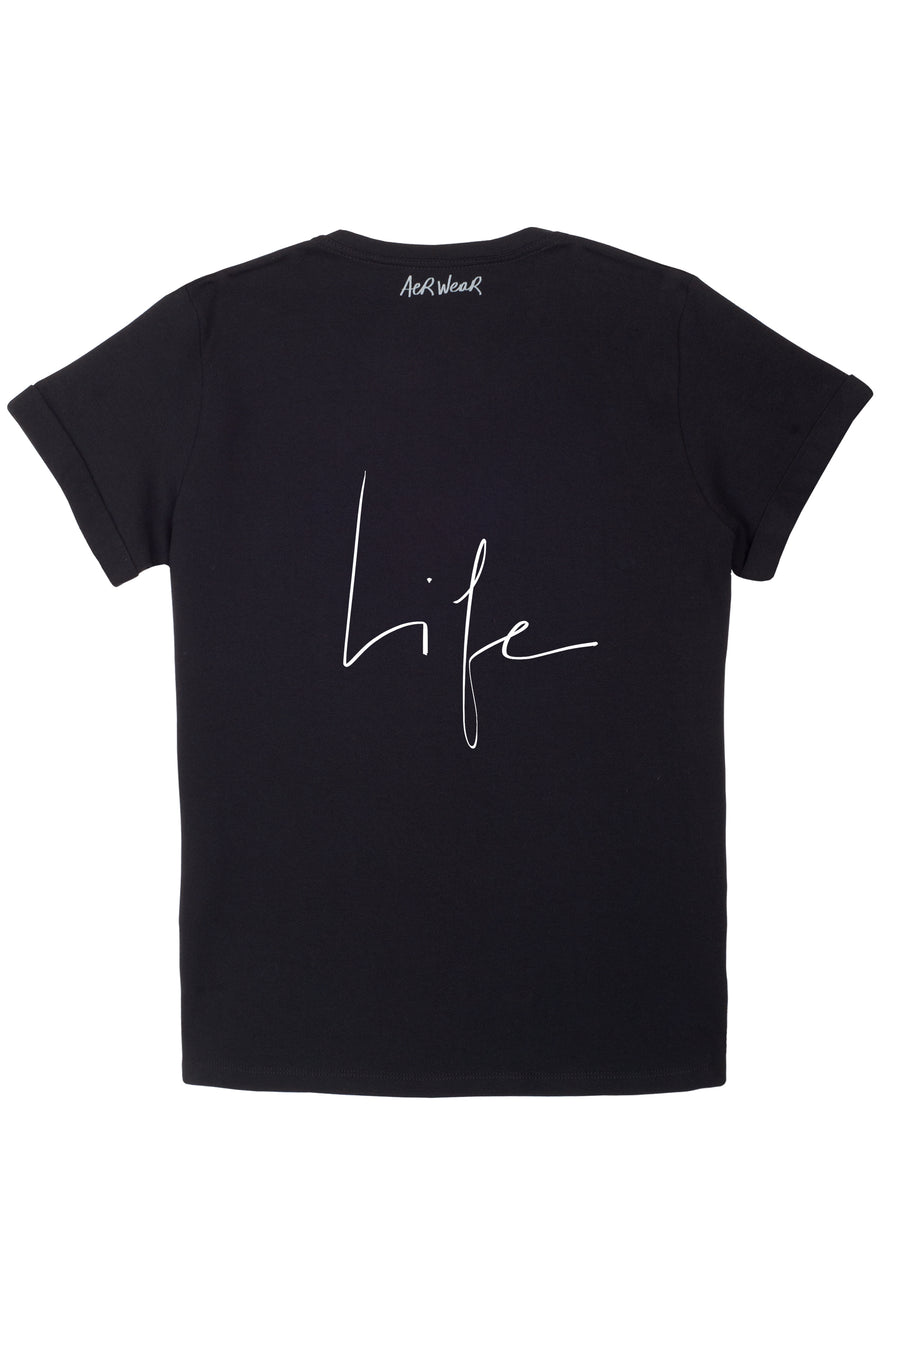 LIFE Tshirt Black version